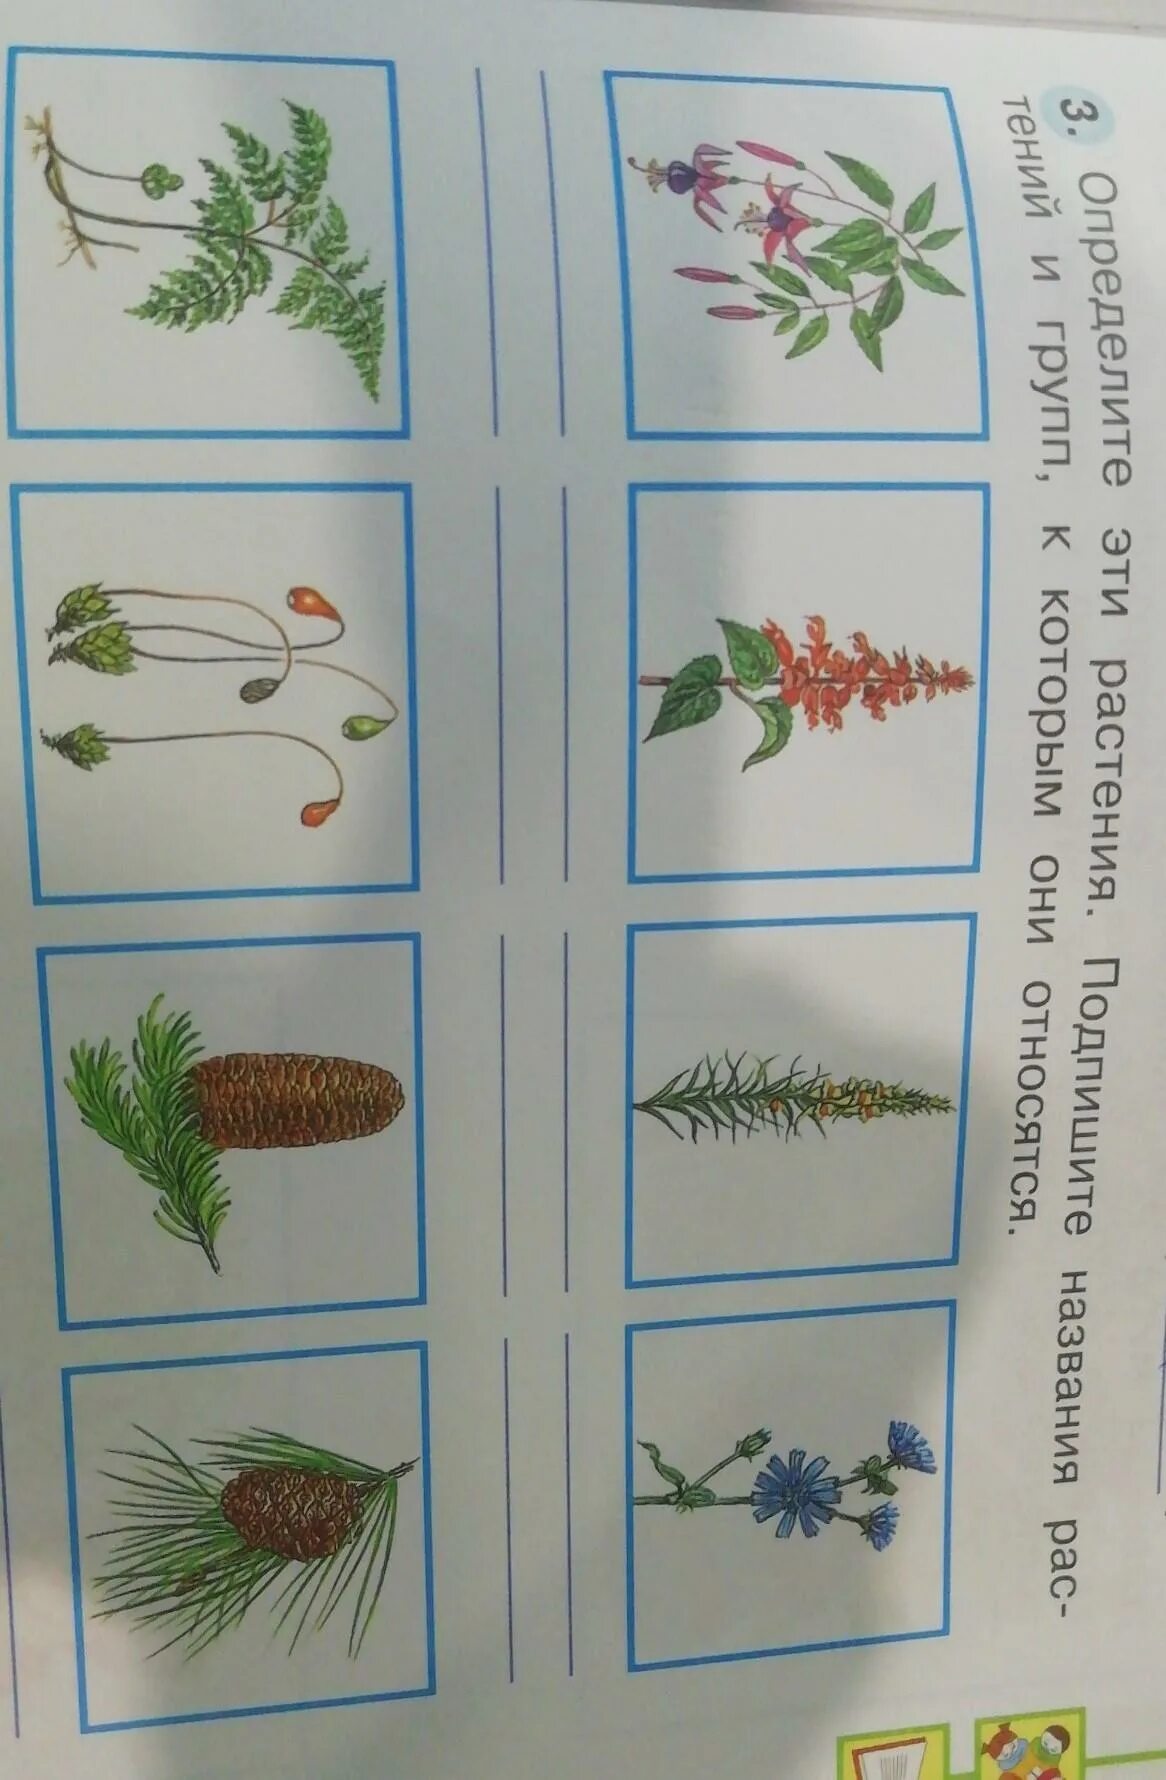 Определить растение. Определить растения по фотогалереи. Определить растение по картинке. Распознаватель растений. Как отличить растения